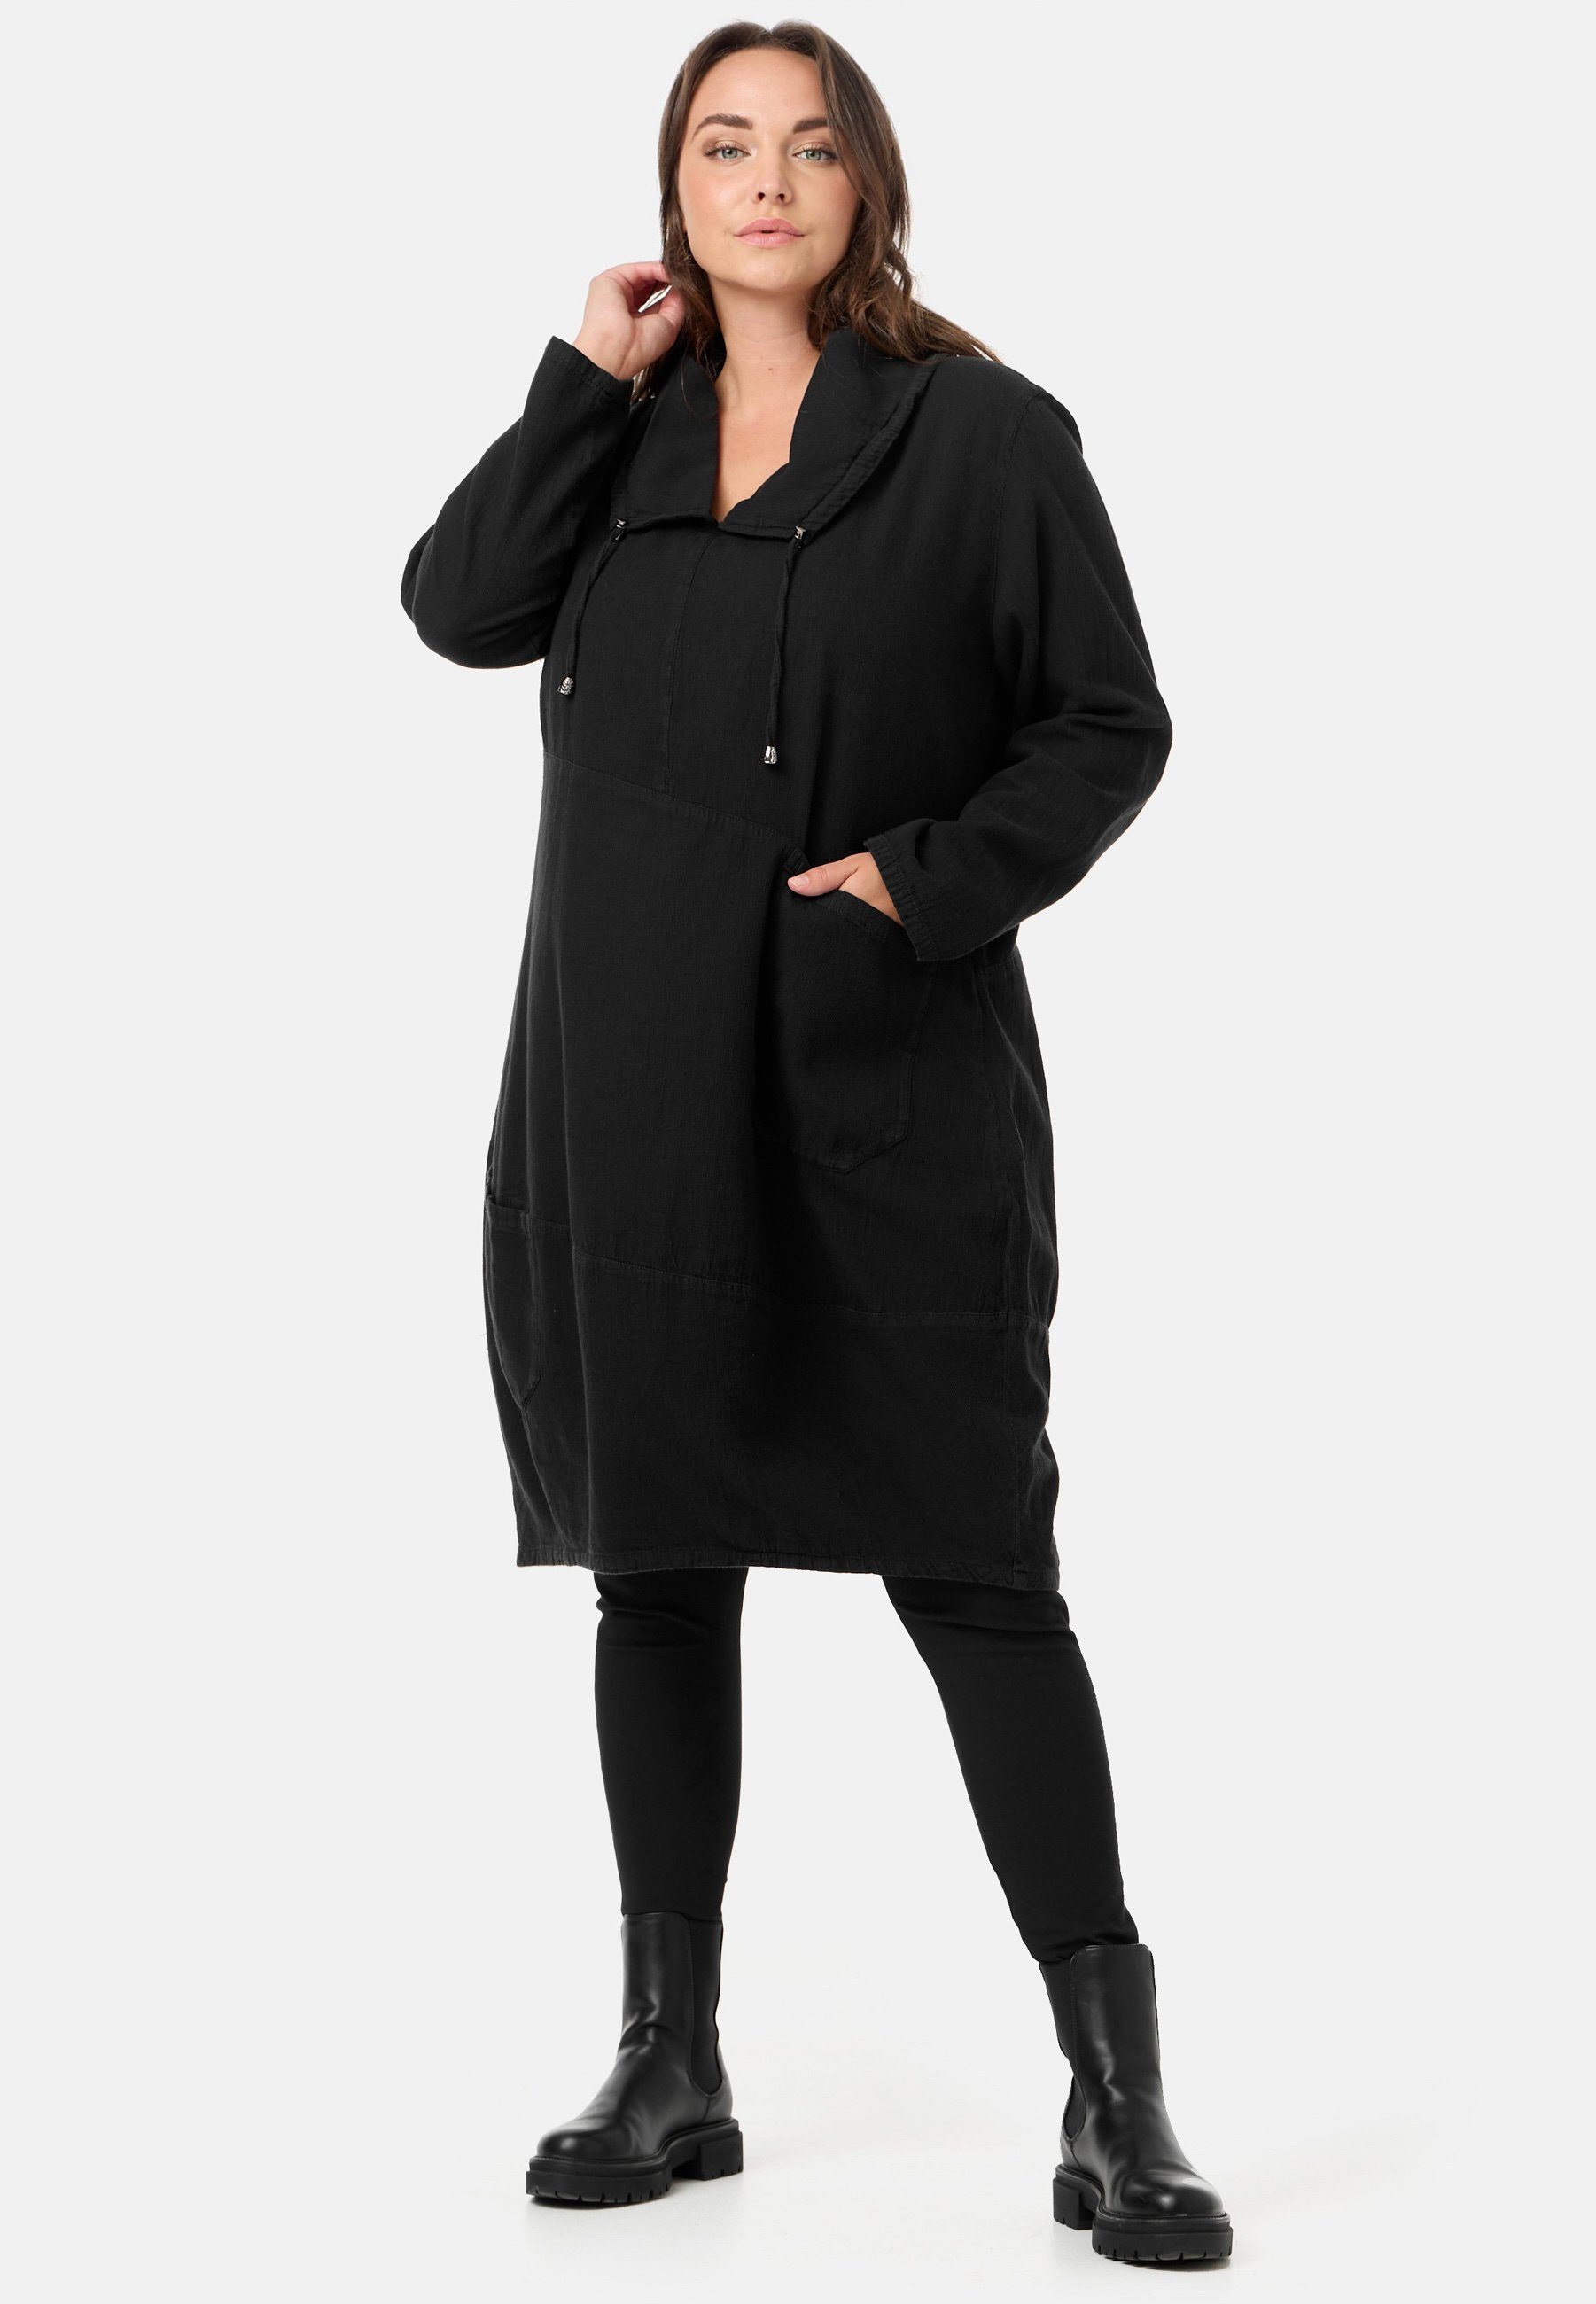 Kekoo A-Linien-Kleid A-Linie Babycord Cordstoff 100% 'Cordelia' Baumwolle Kleid Schwarz aus